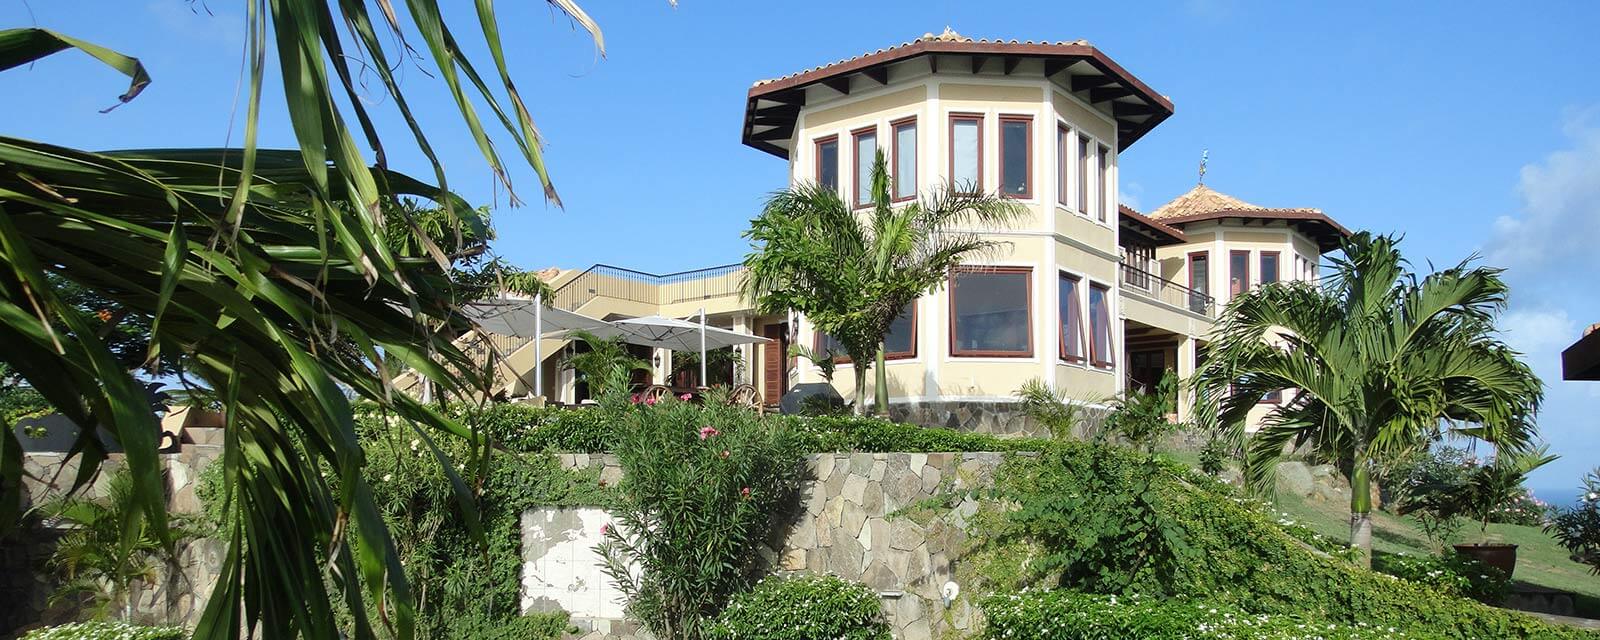 Villa Paradiso Mustique 3 1